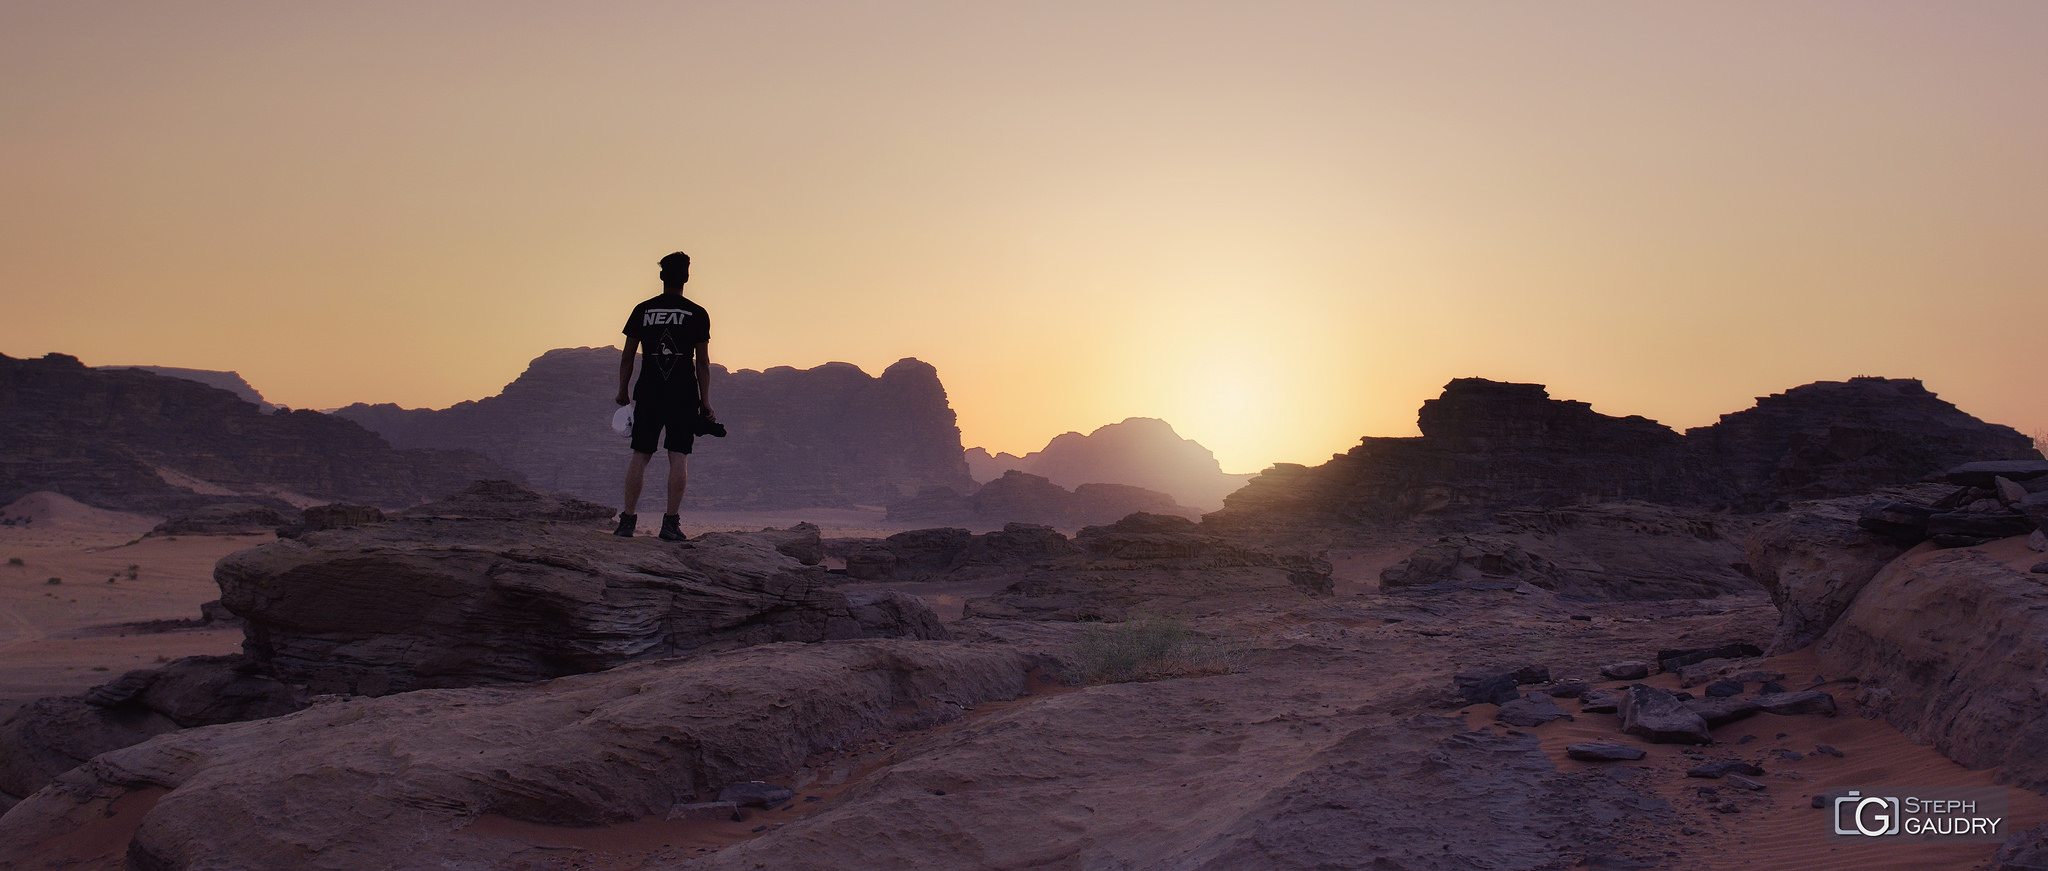 Wadi-Rum, sunset in the desert - my son Tom [Klicken Sie hier, um die Diashow zu starten]